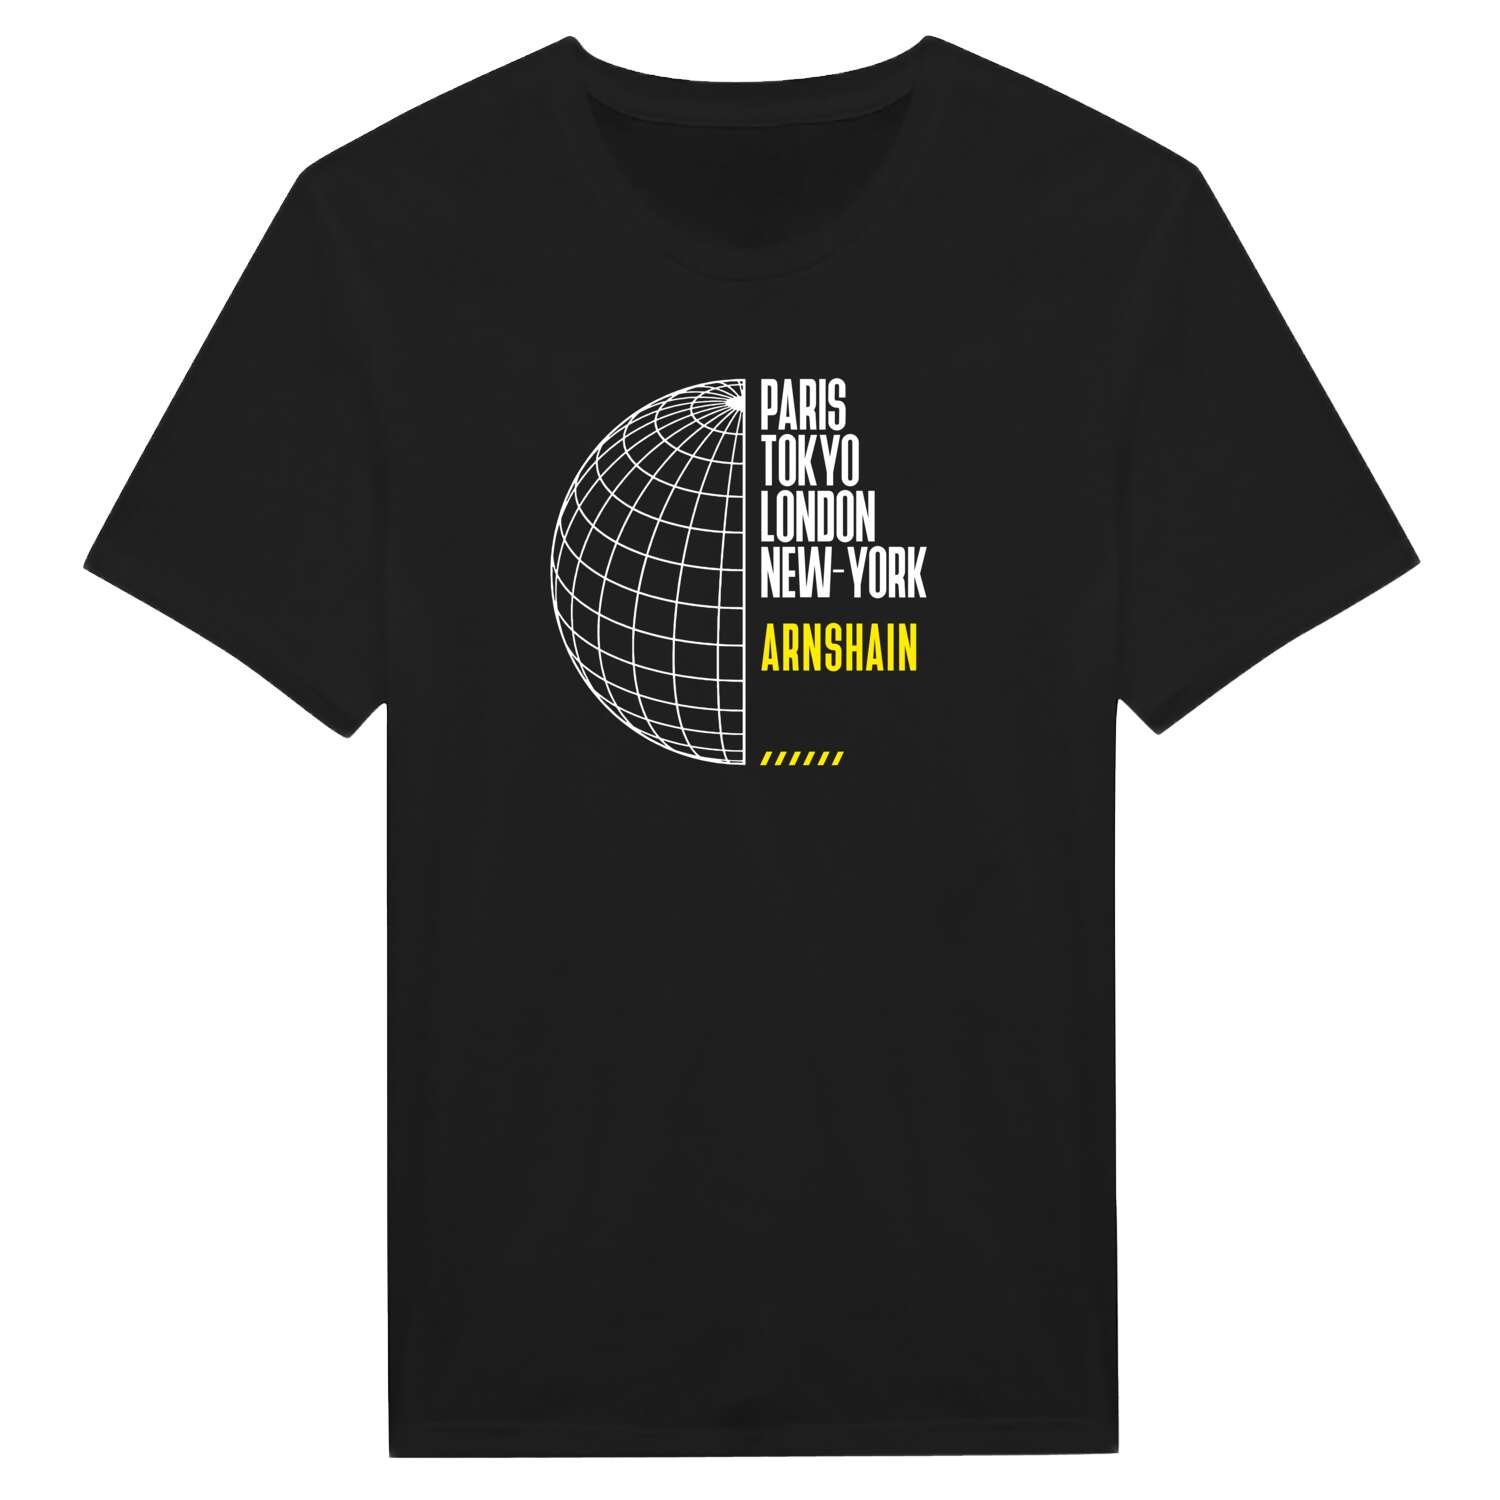 Arnshain T-Shirt »Paris Tokyo London«